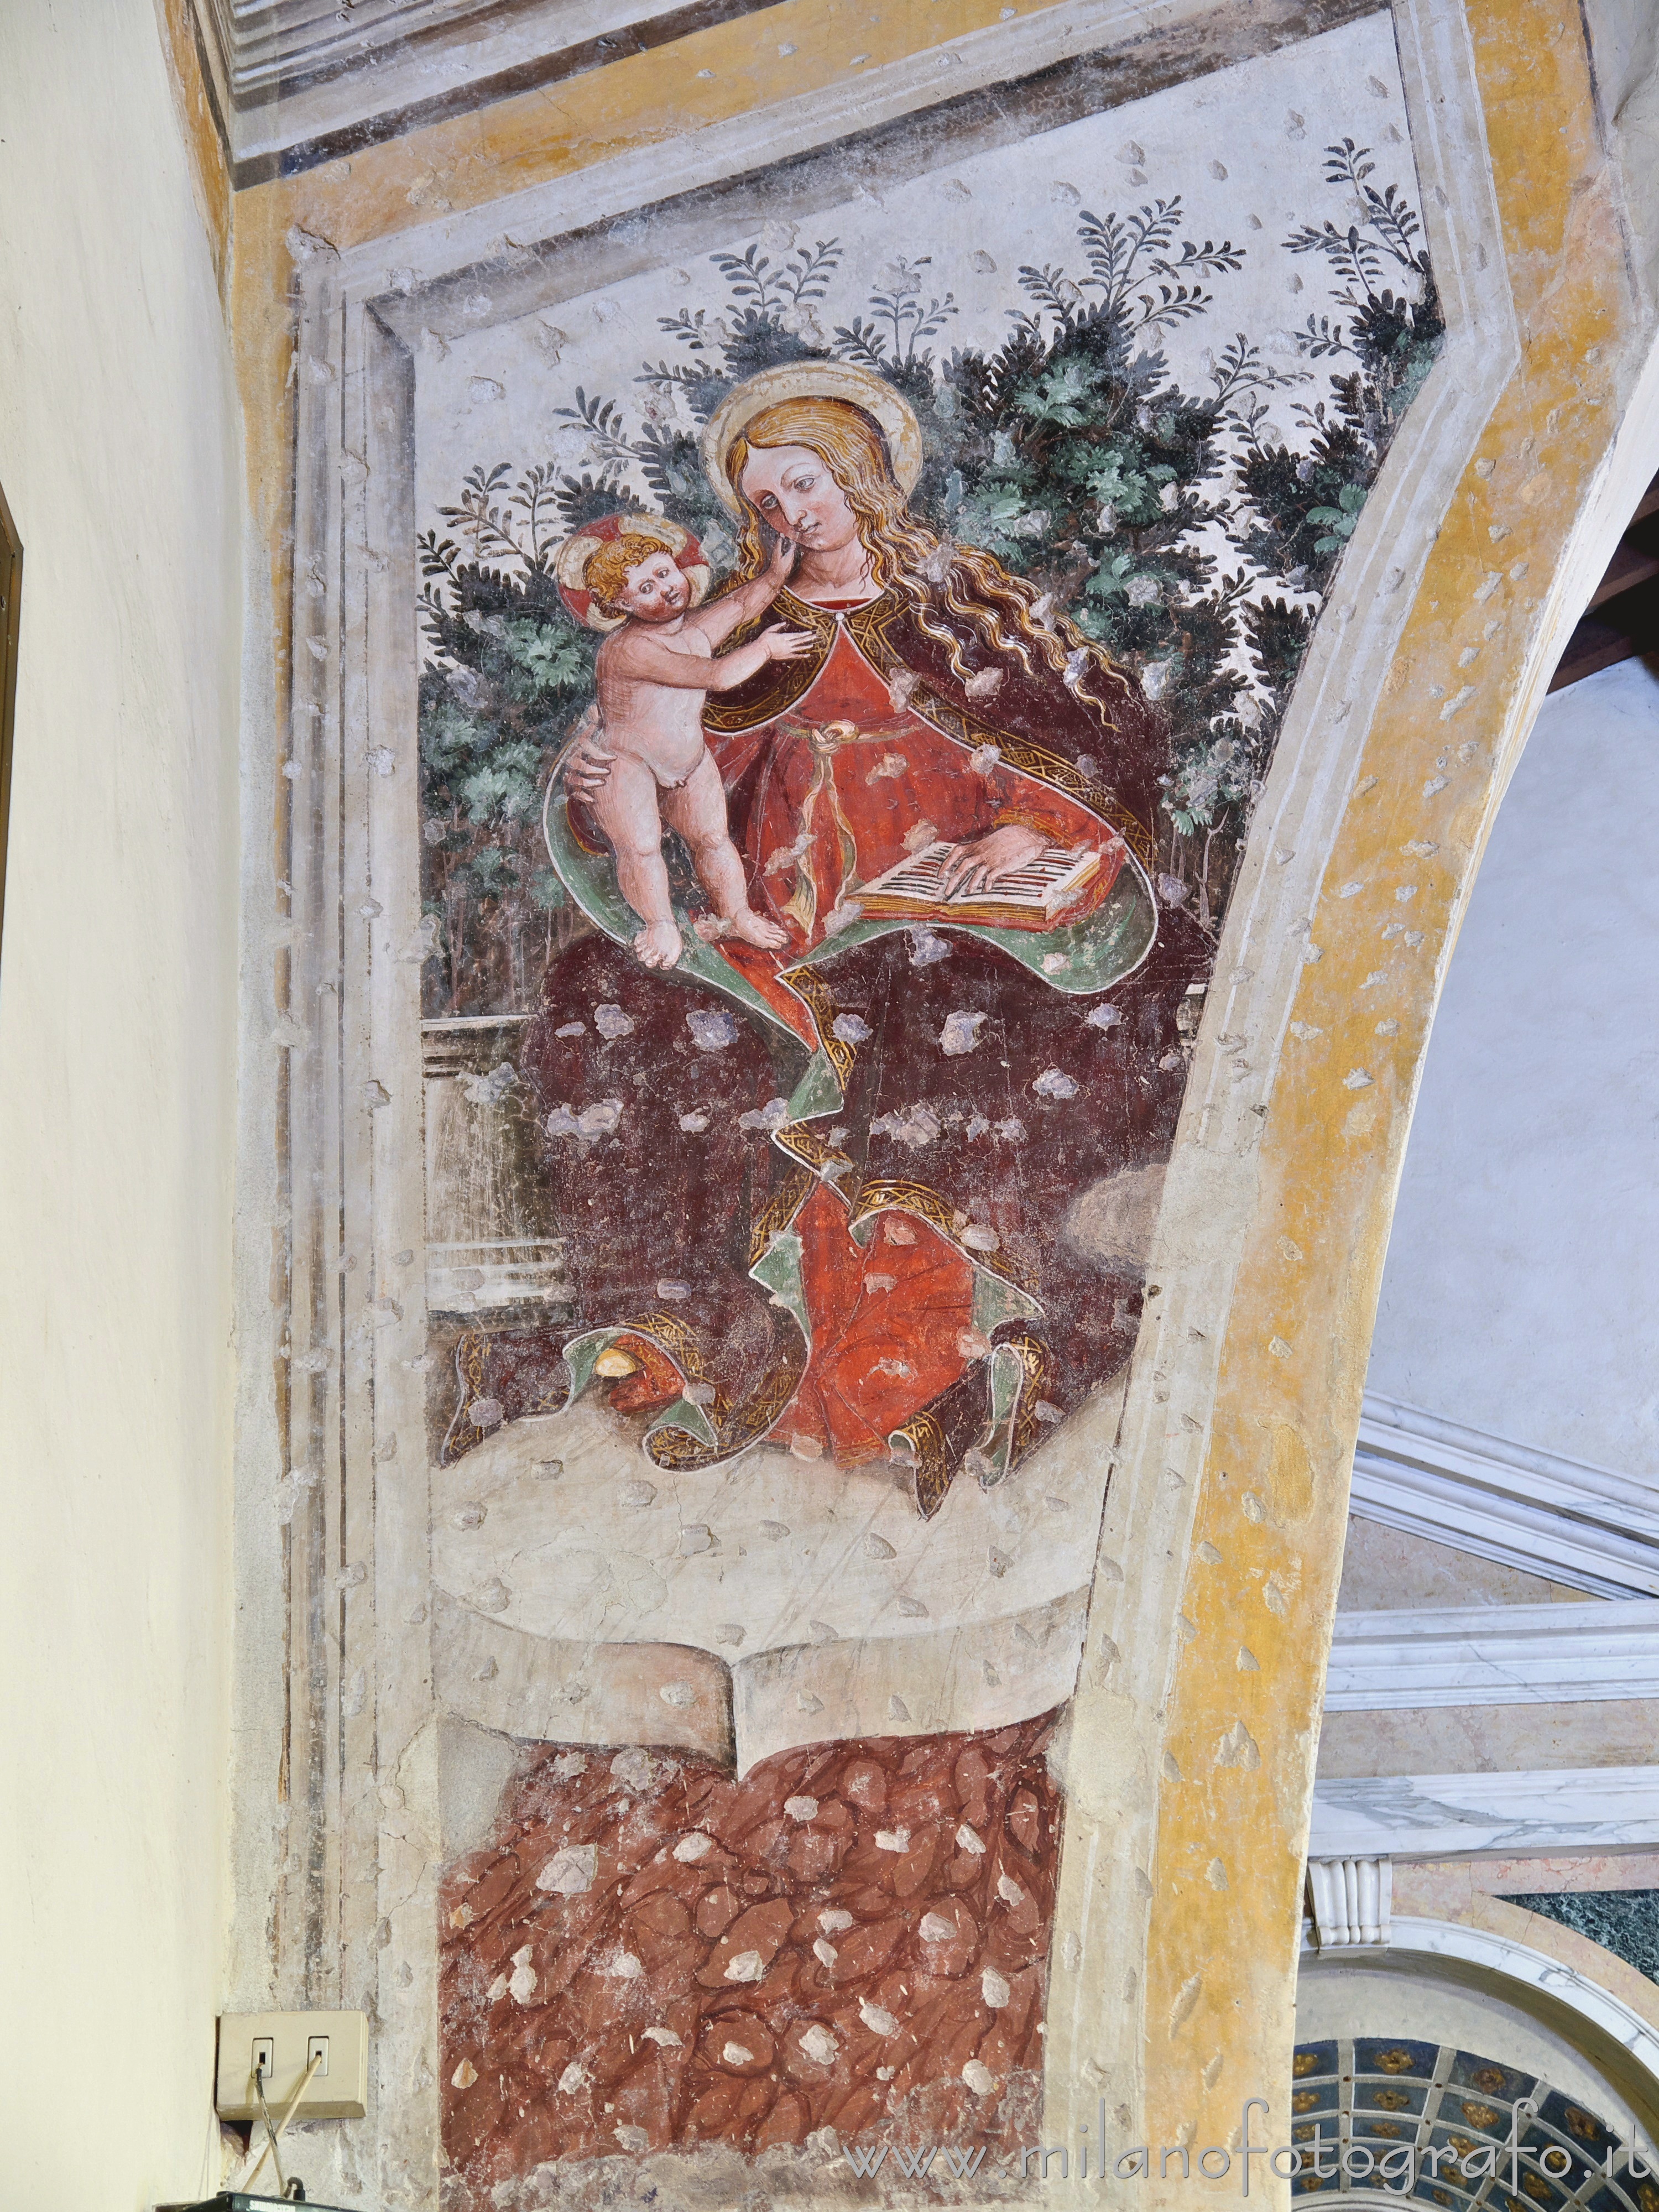 Trezzano sul Naviglio (Milan, Italy): Fresco of Virgin with Child in the Church of Sant'Ambrogio - Trezzano sul Naviglio (Milan, Italy)